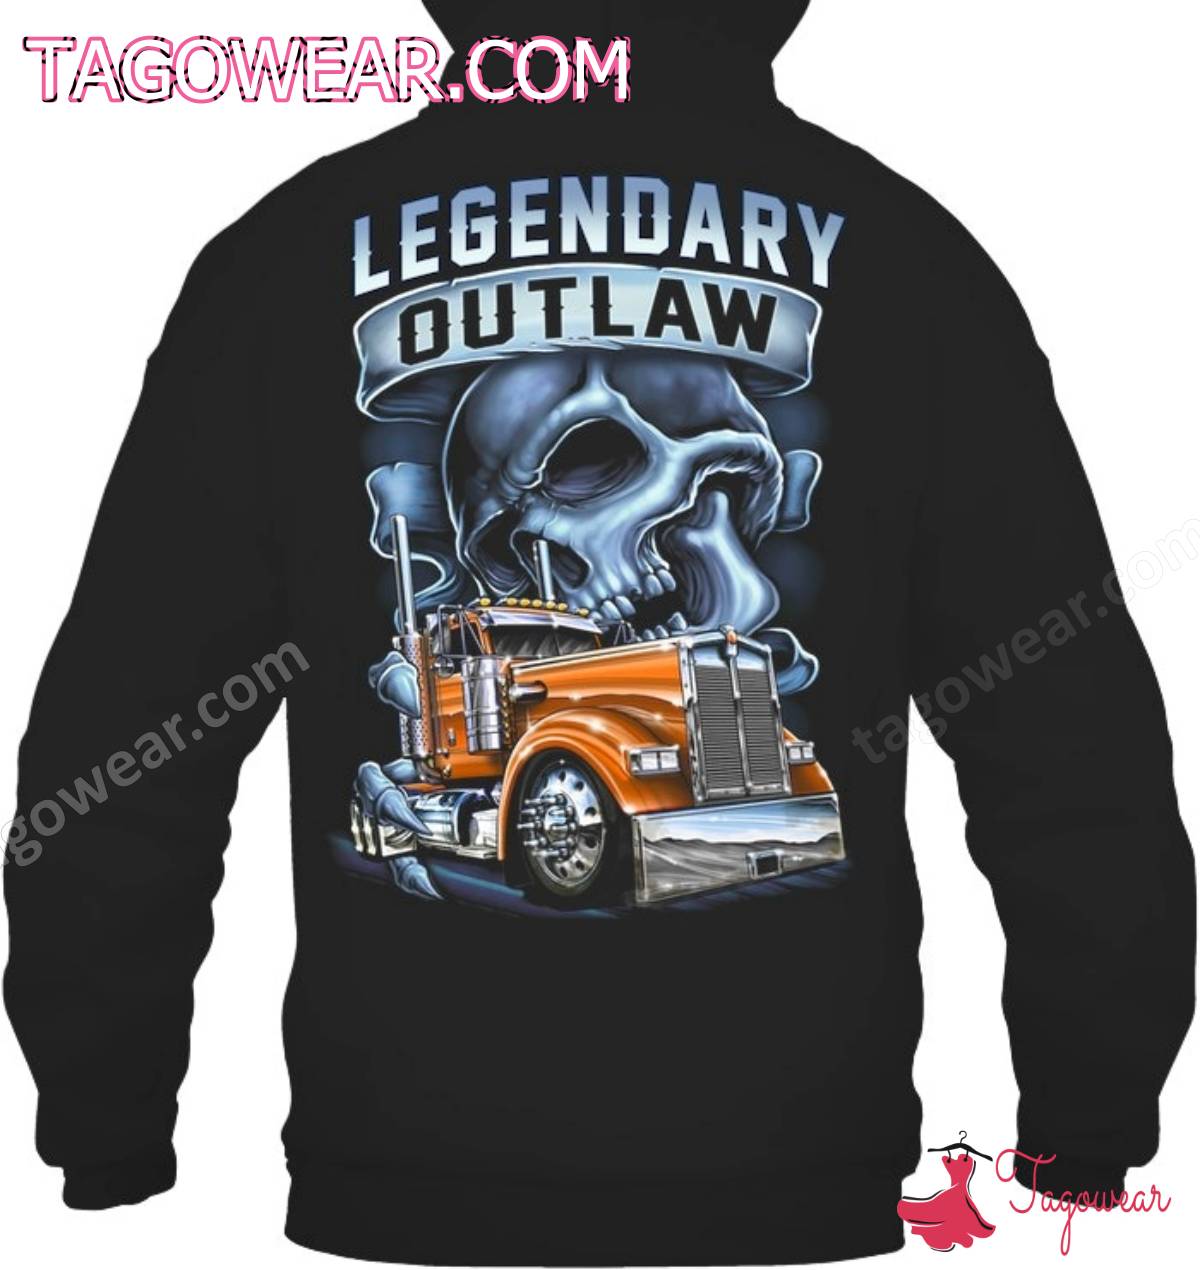 Legendary Outlaw Trucker Skull Shirt